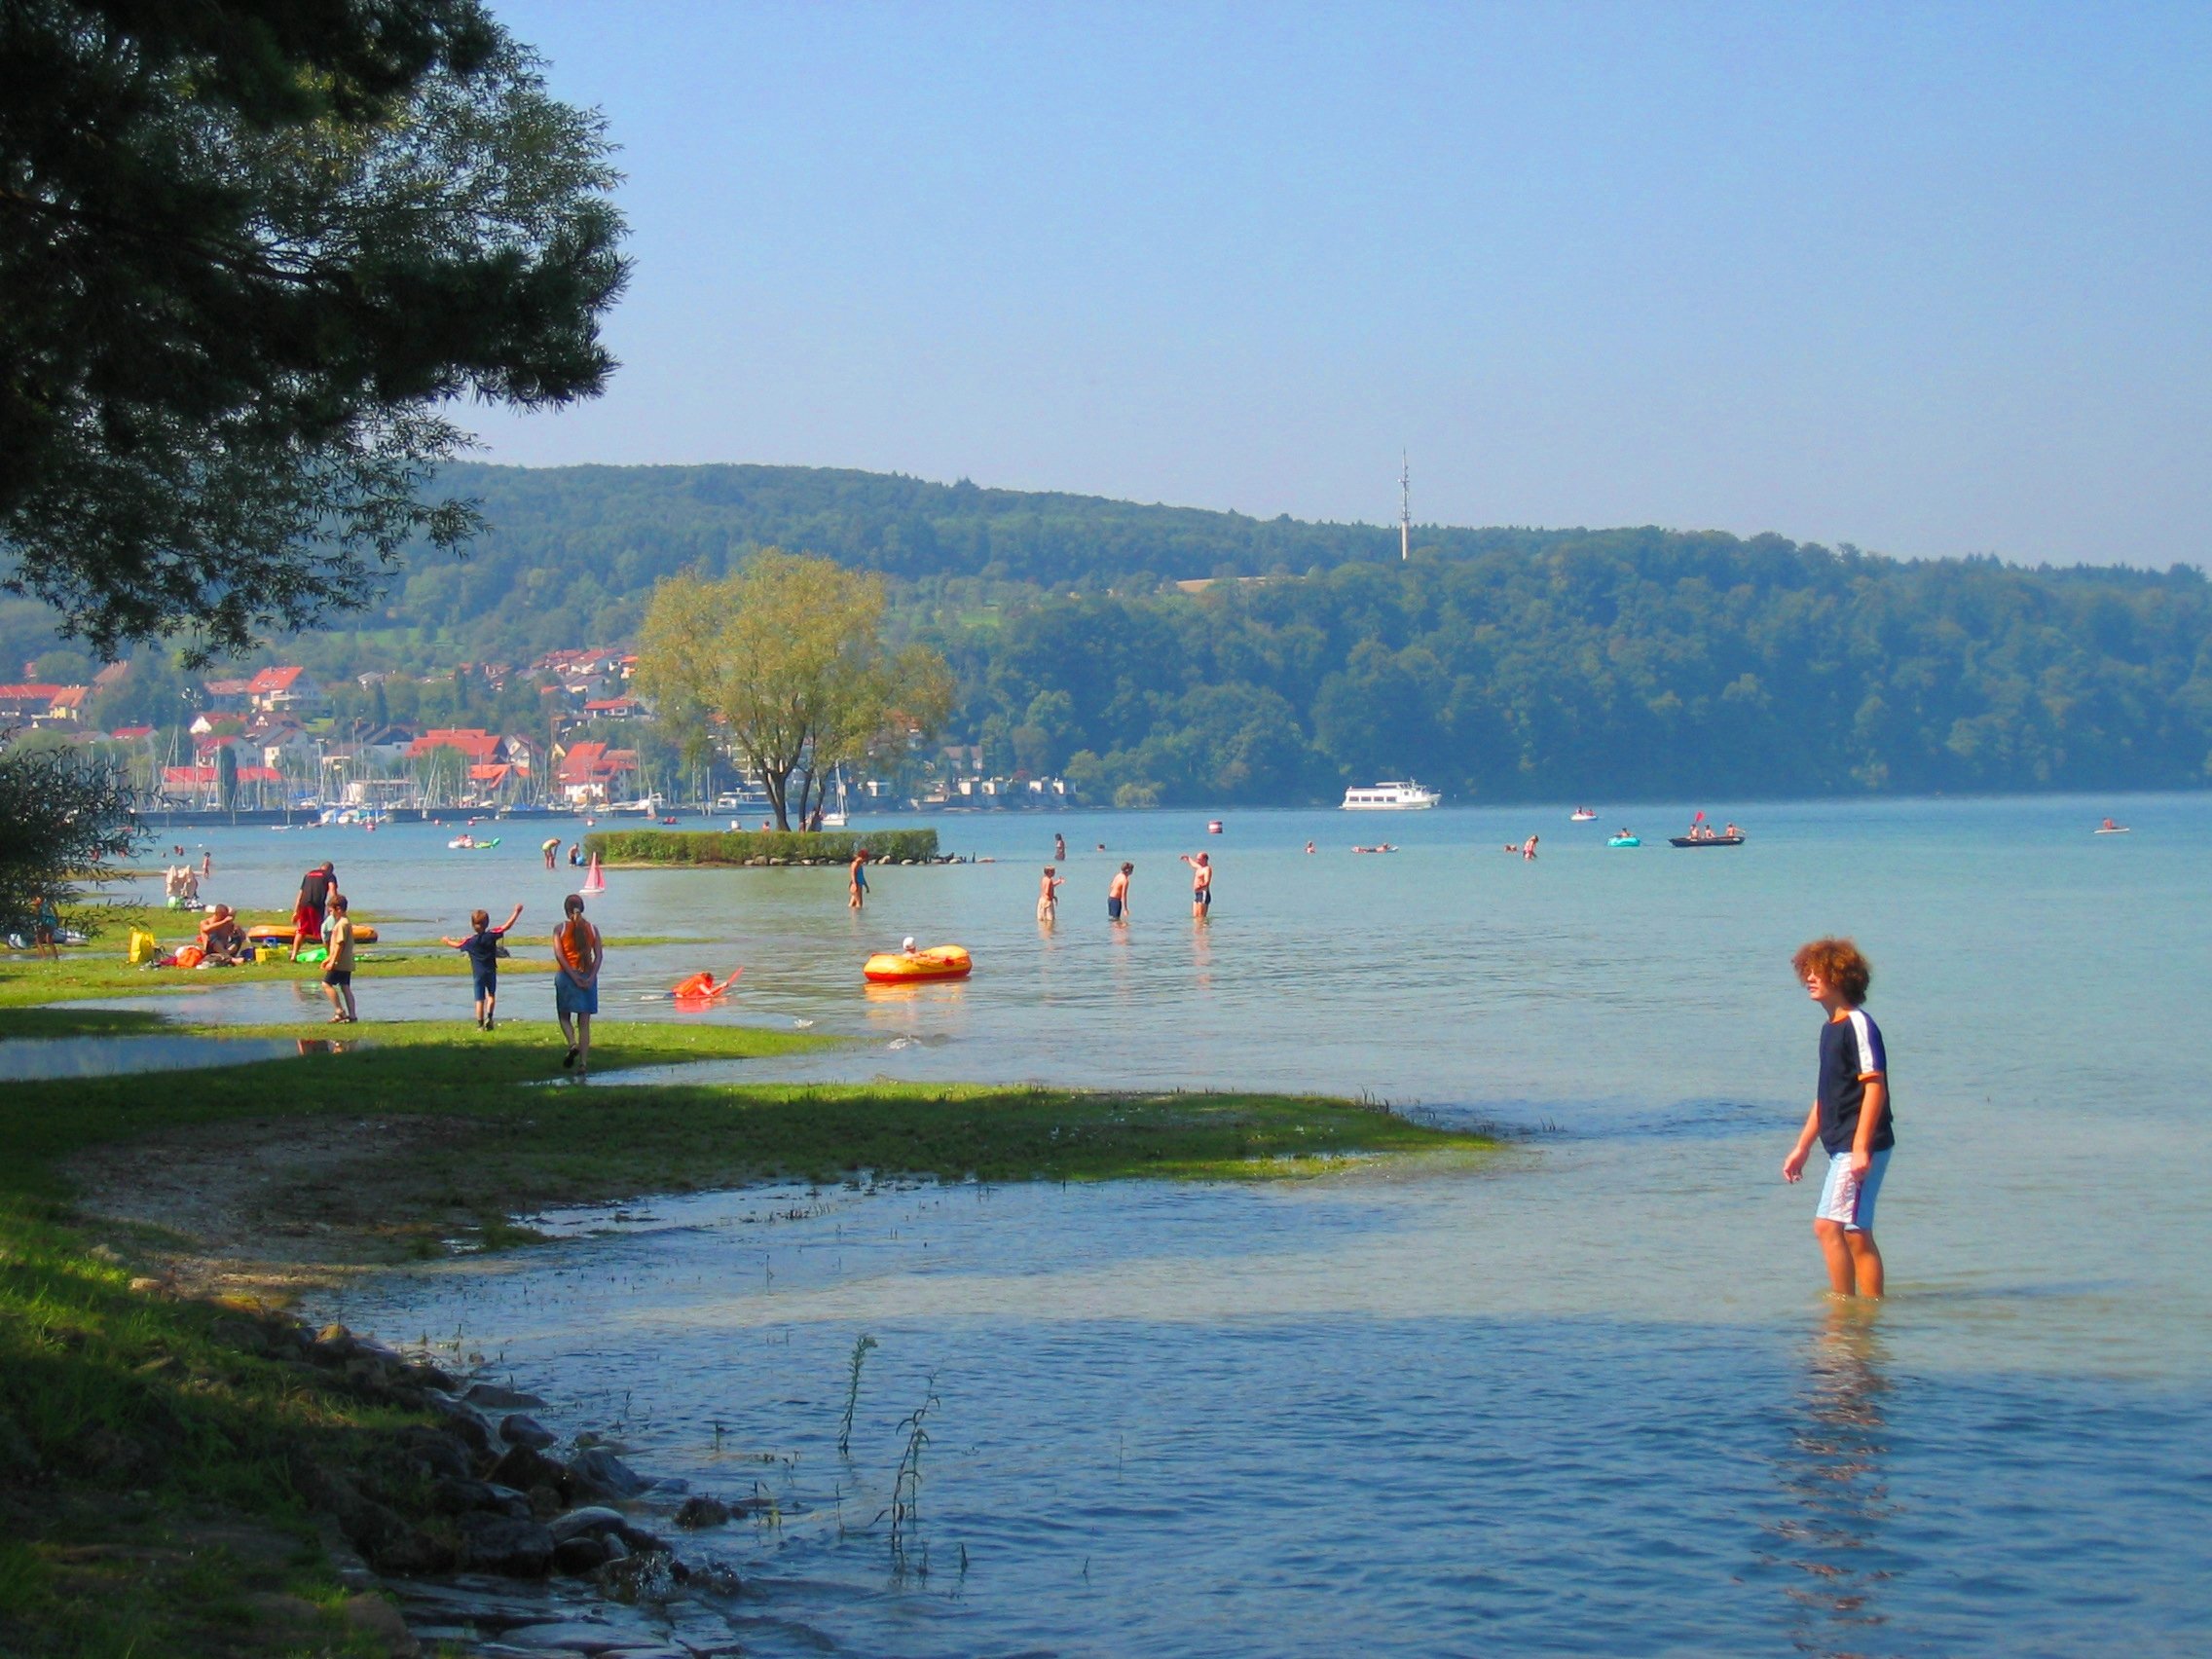 Strandbad Dingelsdorf mit Liegewiese, Strand in den Bodensee und badenden Menschen